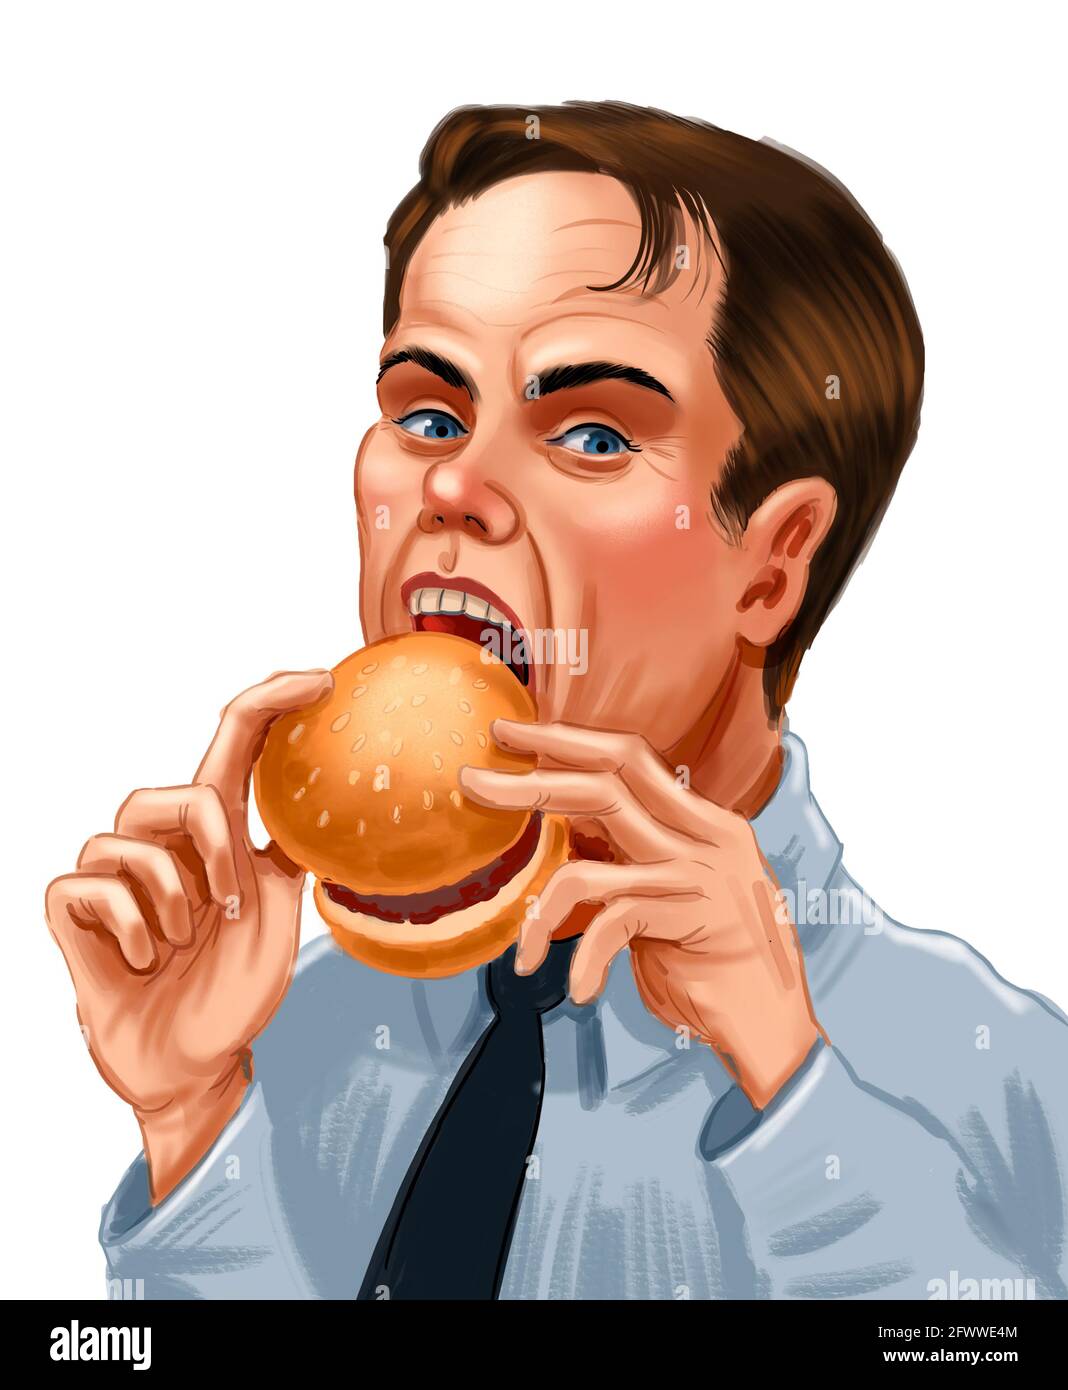 Happy man eating a cheeseburger. Digital drawing Stock Photo